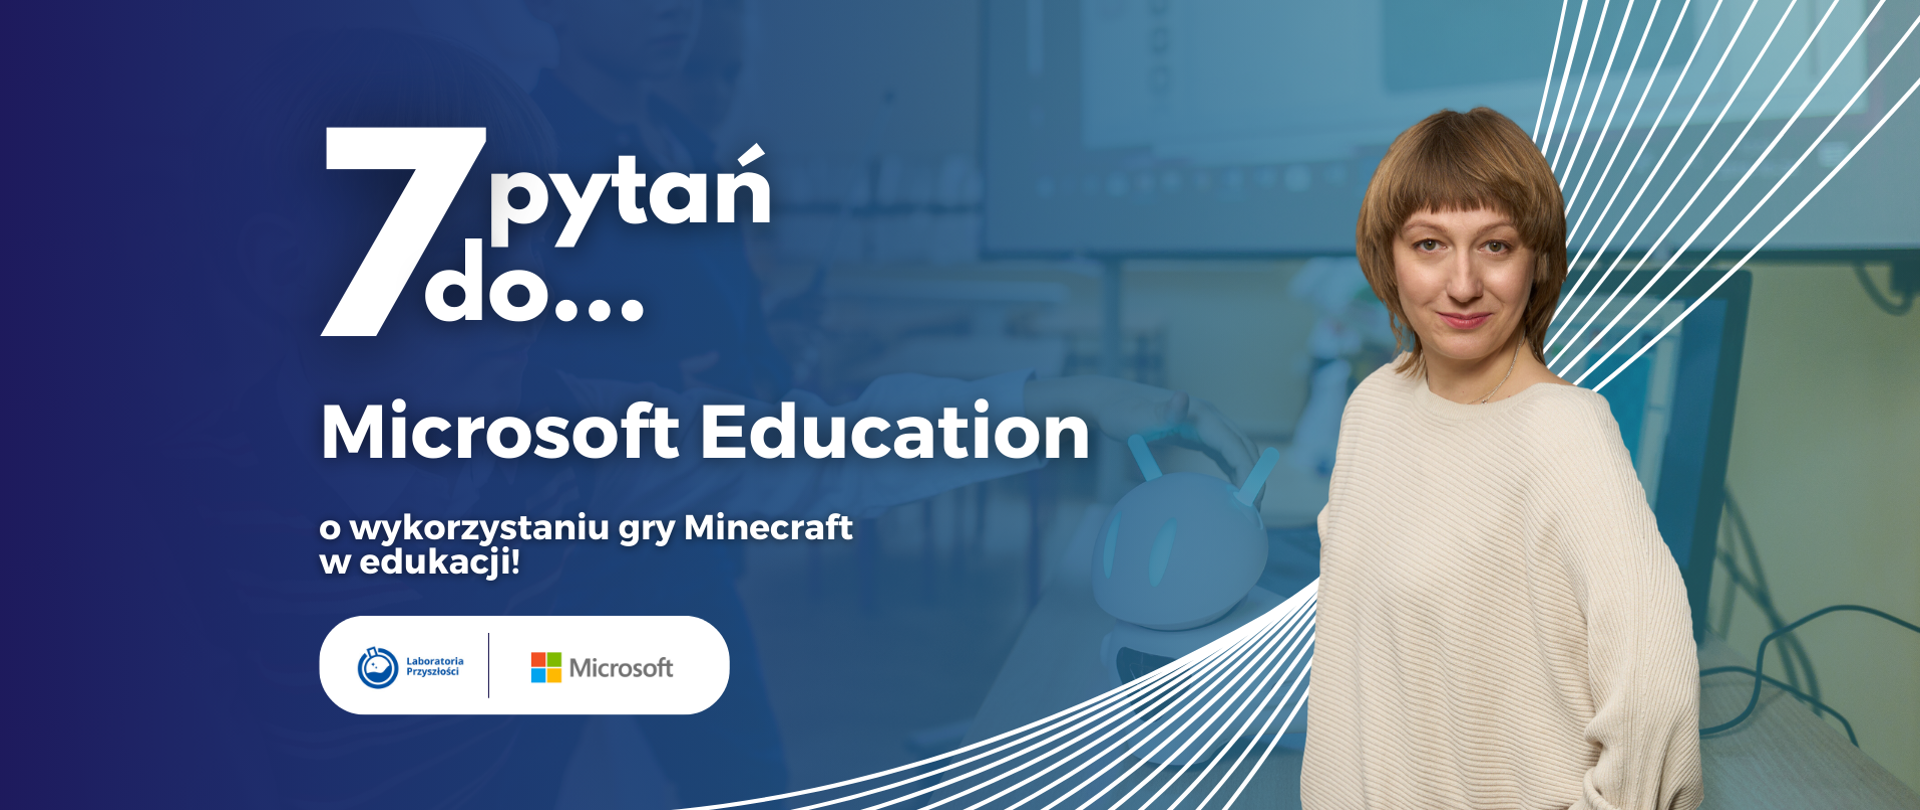 Po lewej:
7 pytań do...
Microsoft Education o wykorzystaniu gry Minecraft w edukacji!
Logotypy: Laboratoria Przyszłości, Microsoft
Po prawej zdjęcie Barbary Michalskiej - dyrektor rynku edukacyjnego w Microsoft Education